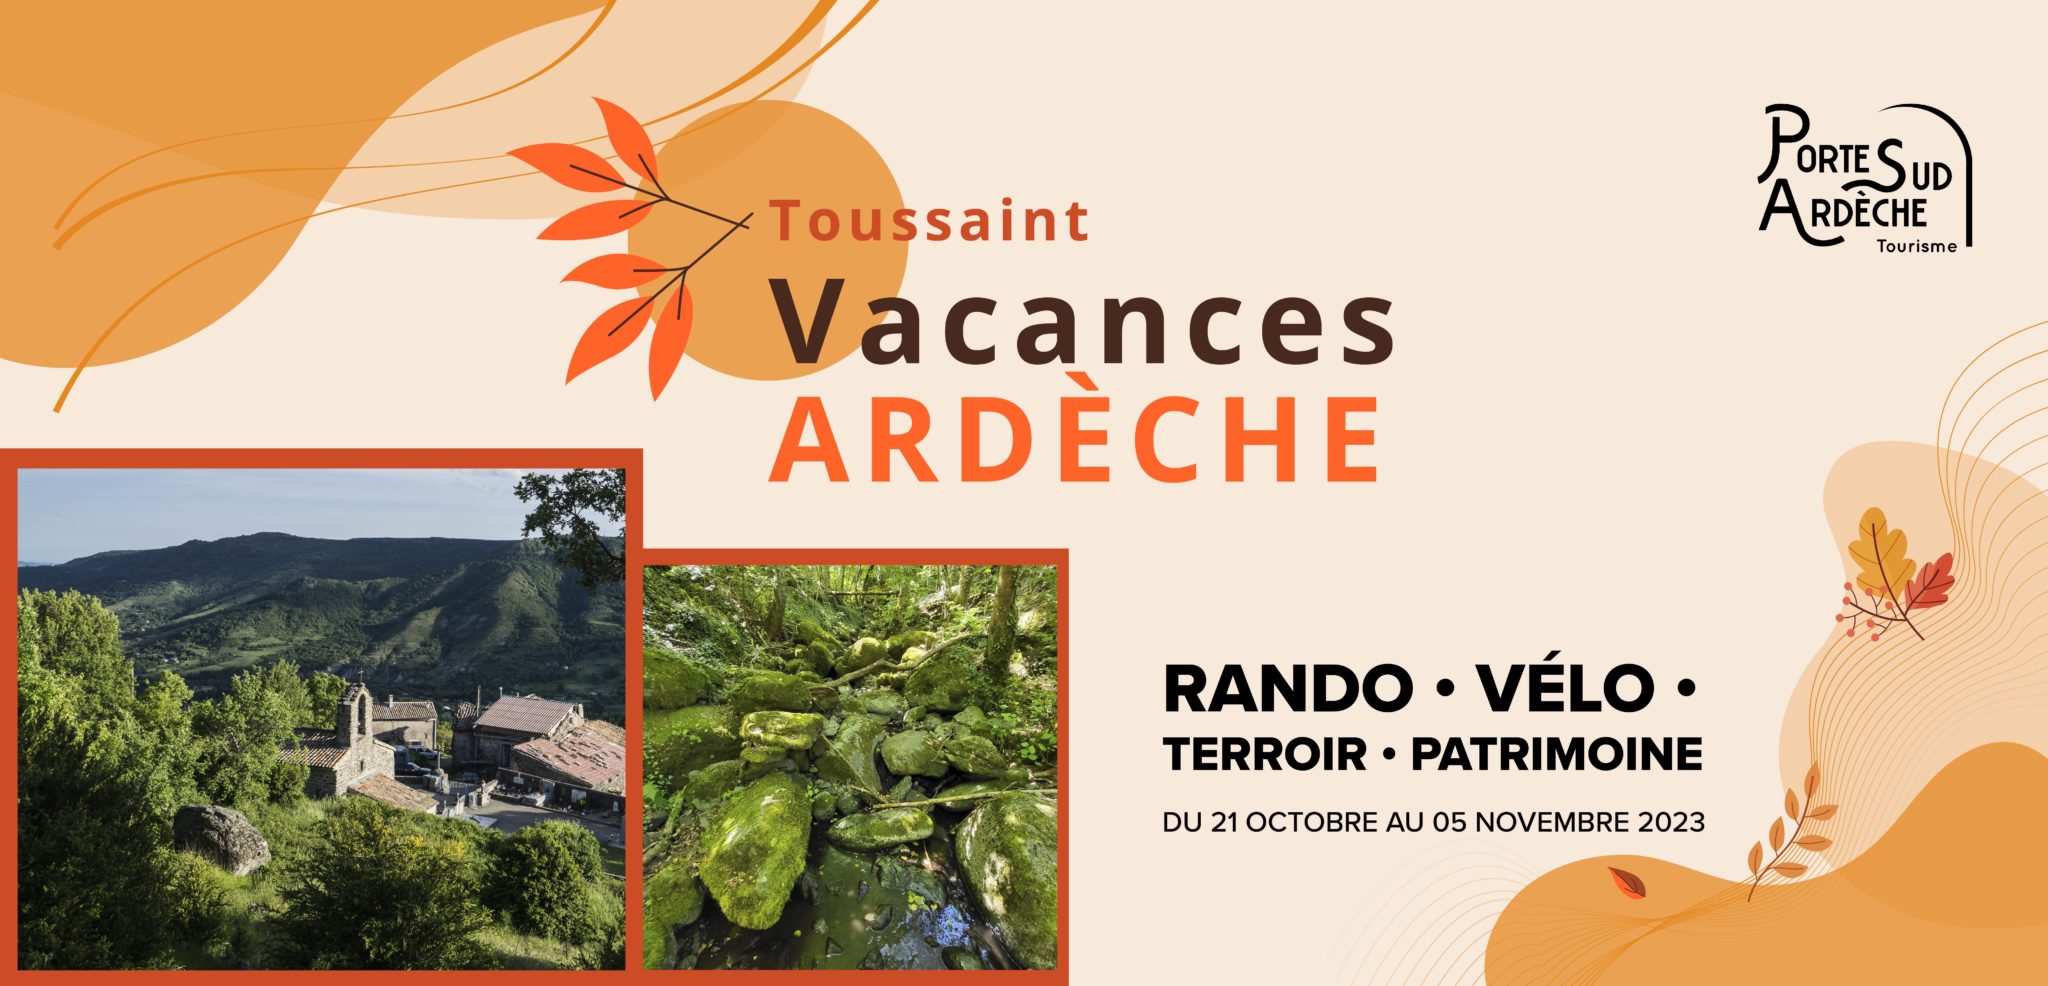 Vacances de la Toussaint en Ardèche